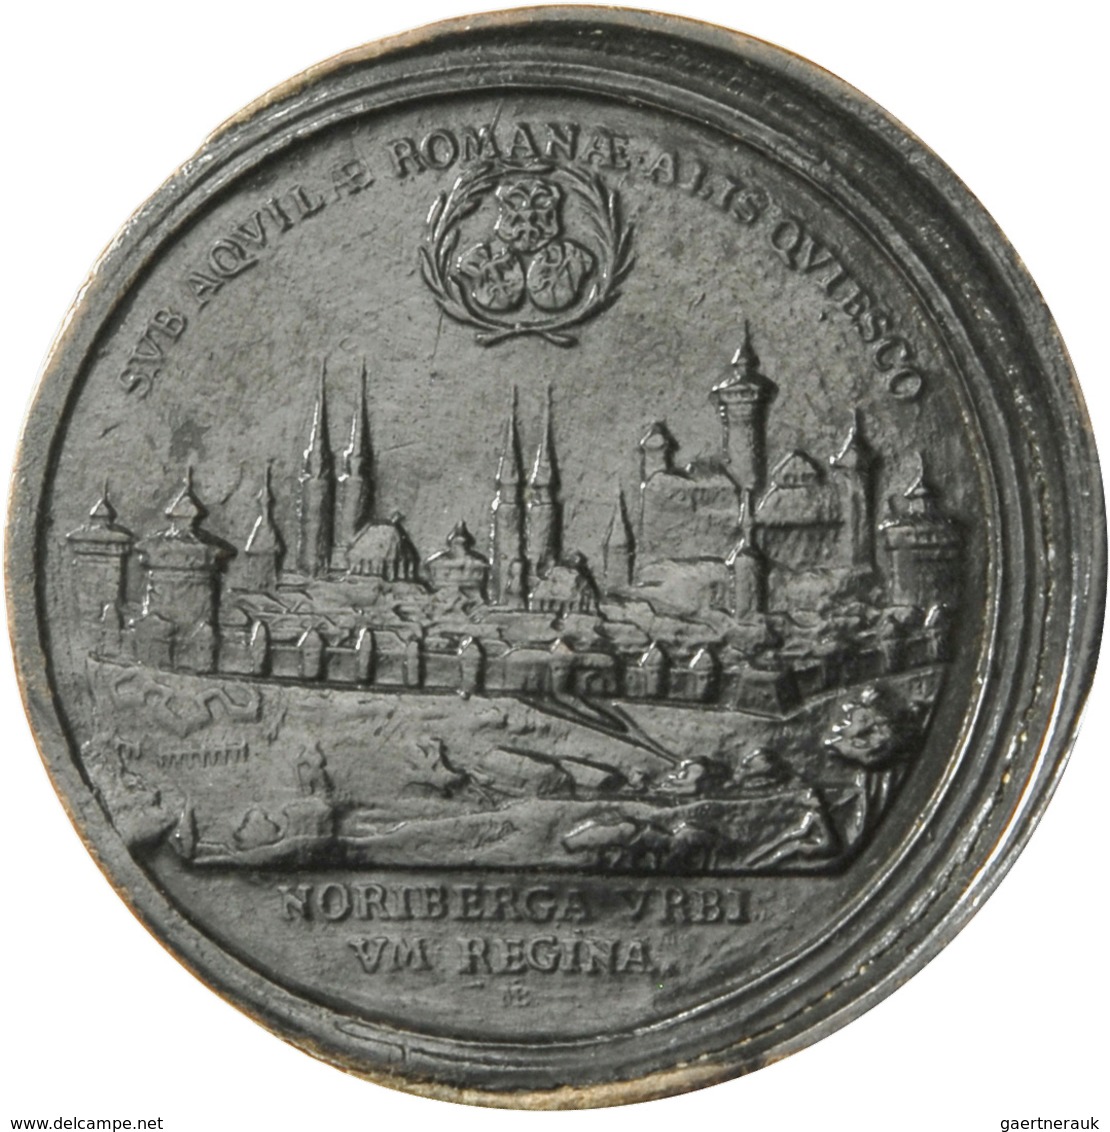 Altdeutschland und RDR bis 1800: Nürnberg: Satz von 30 runden, hölzernen Brettsteinen, gefertigt in